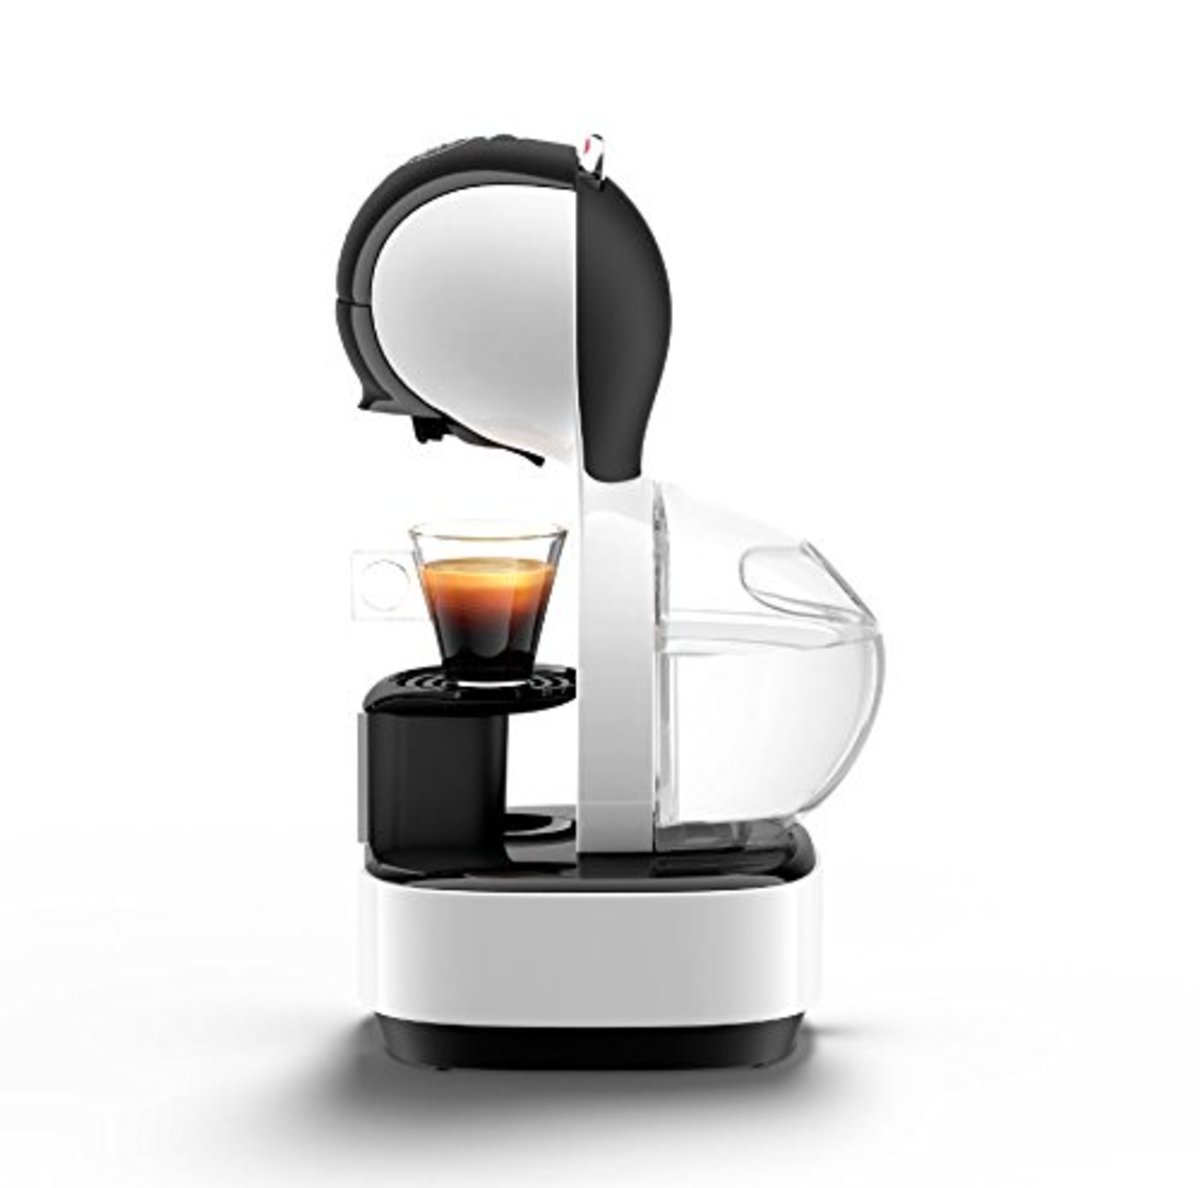 Nescafe Dolce Gusto Coffee Maker Lumio 1230VXA White